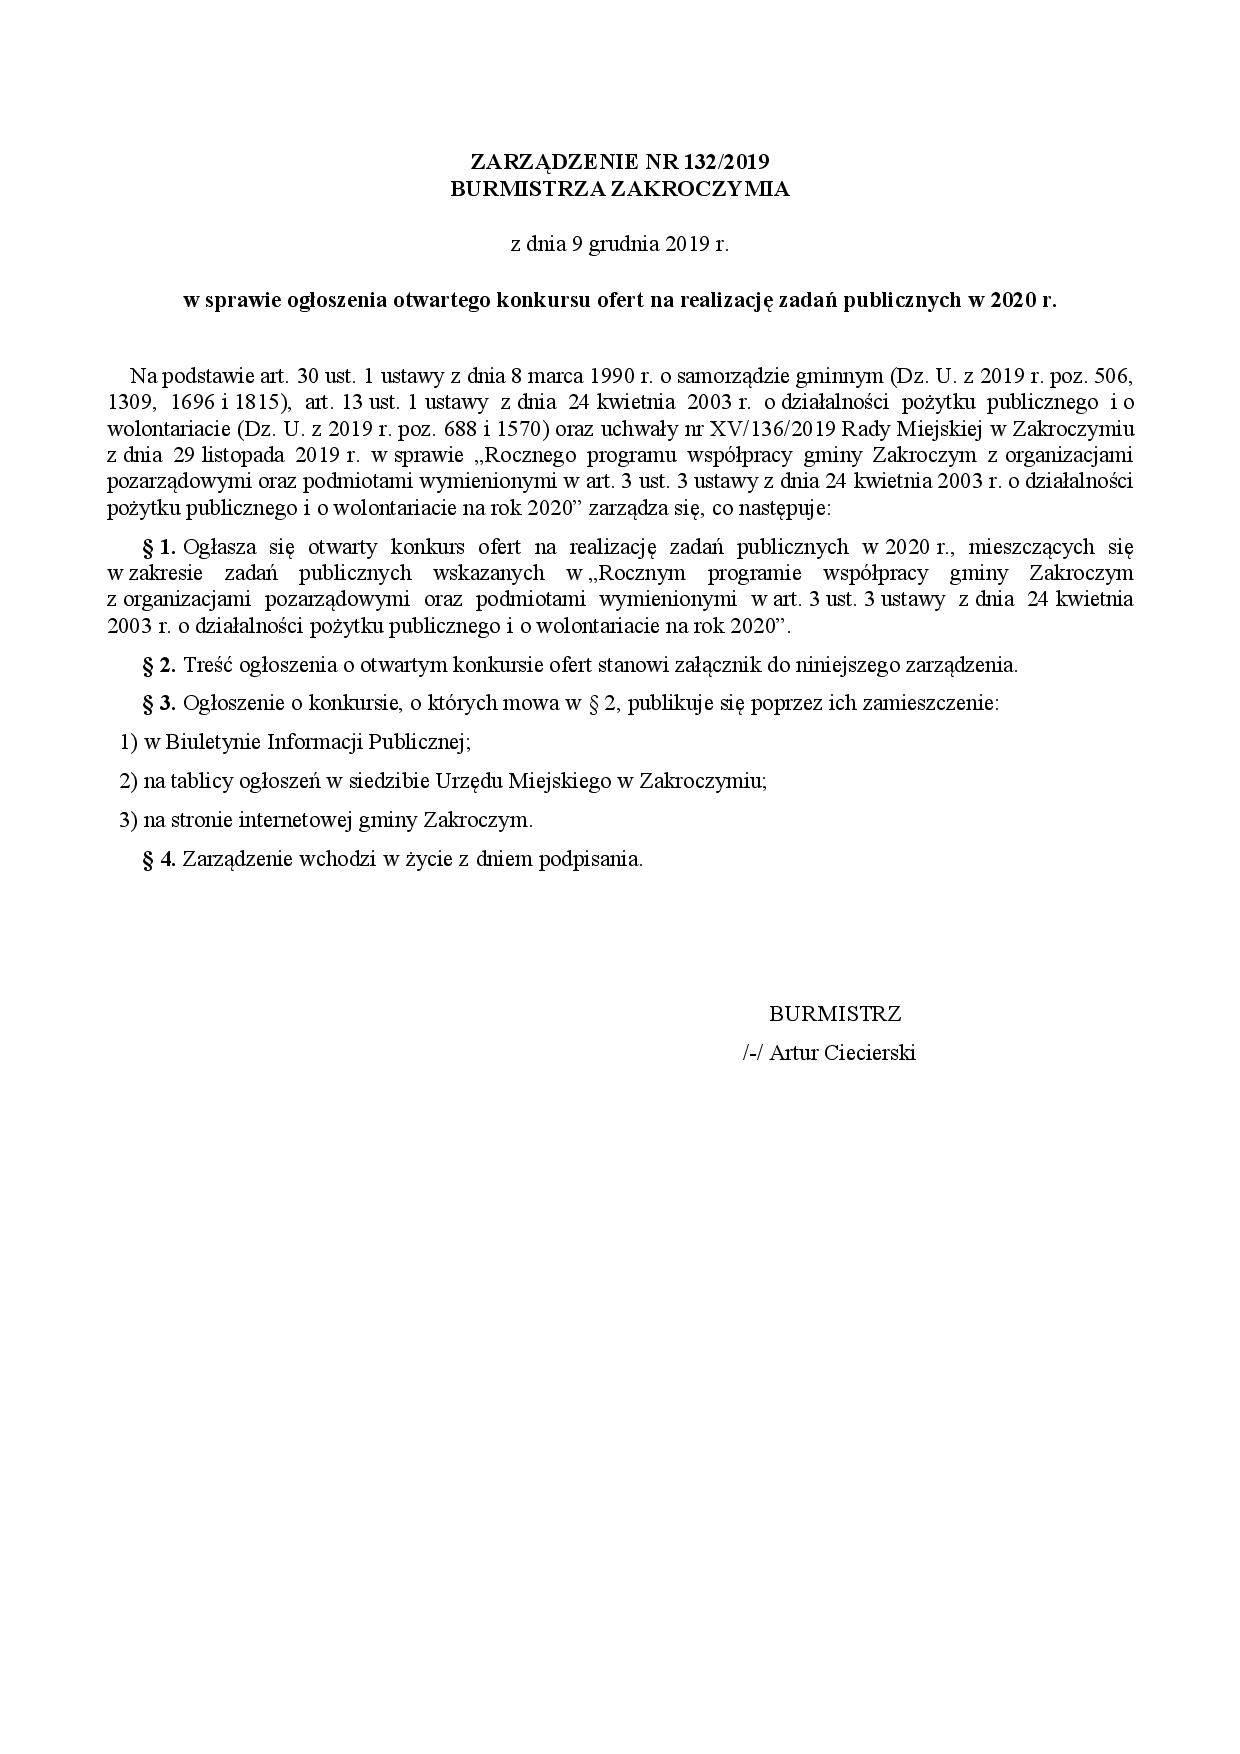 Zarz_konkurs NGOs 2020_prawnik parafka_podpis-page-001